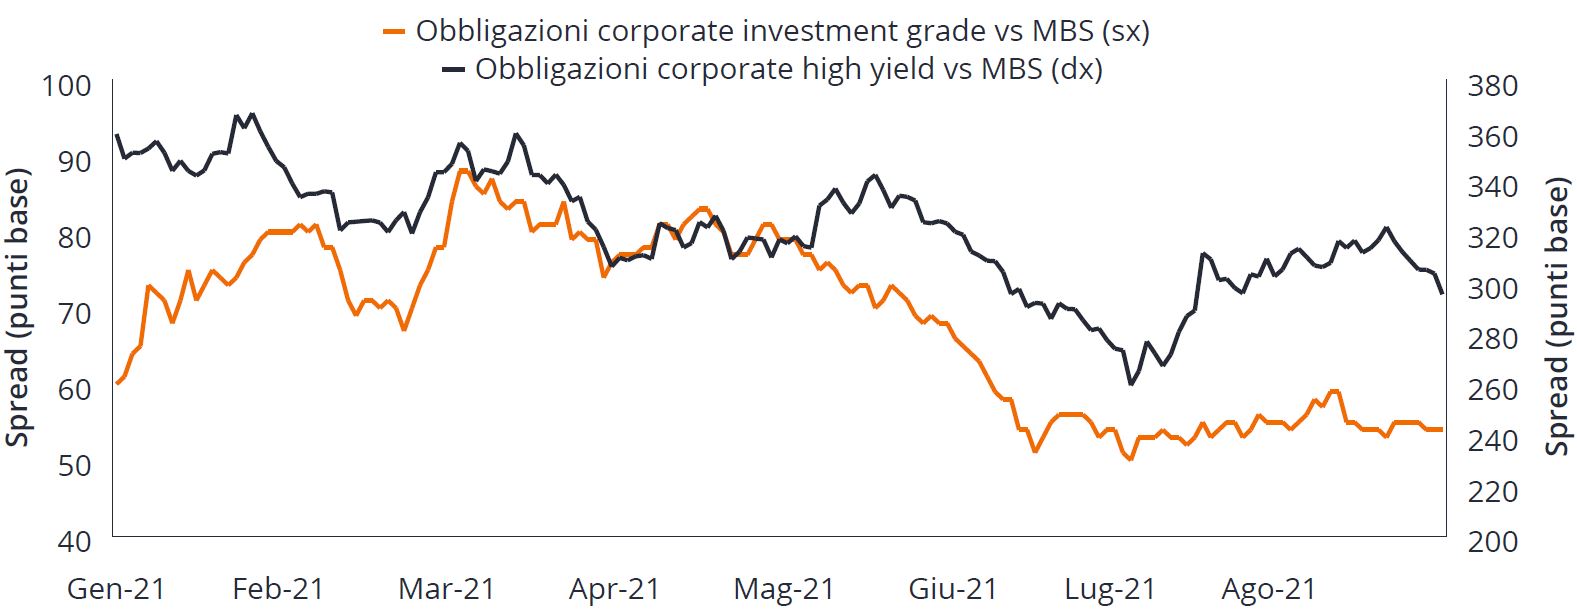 Confronto tra gli spread delle obbligazioni societarie Investment-grade e high-yield e quelli degli MBS